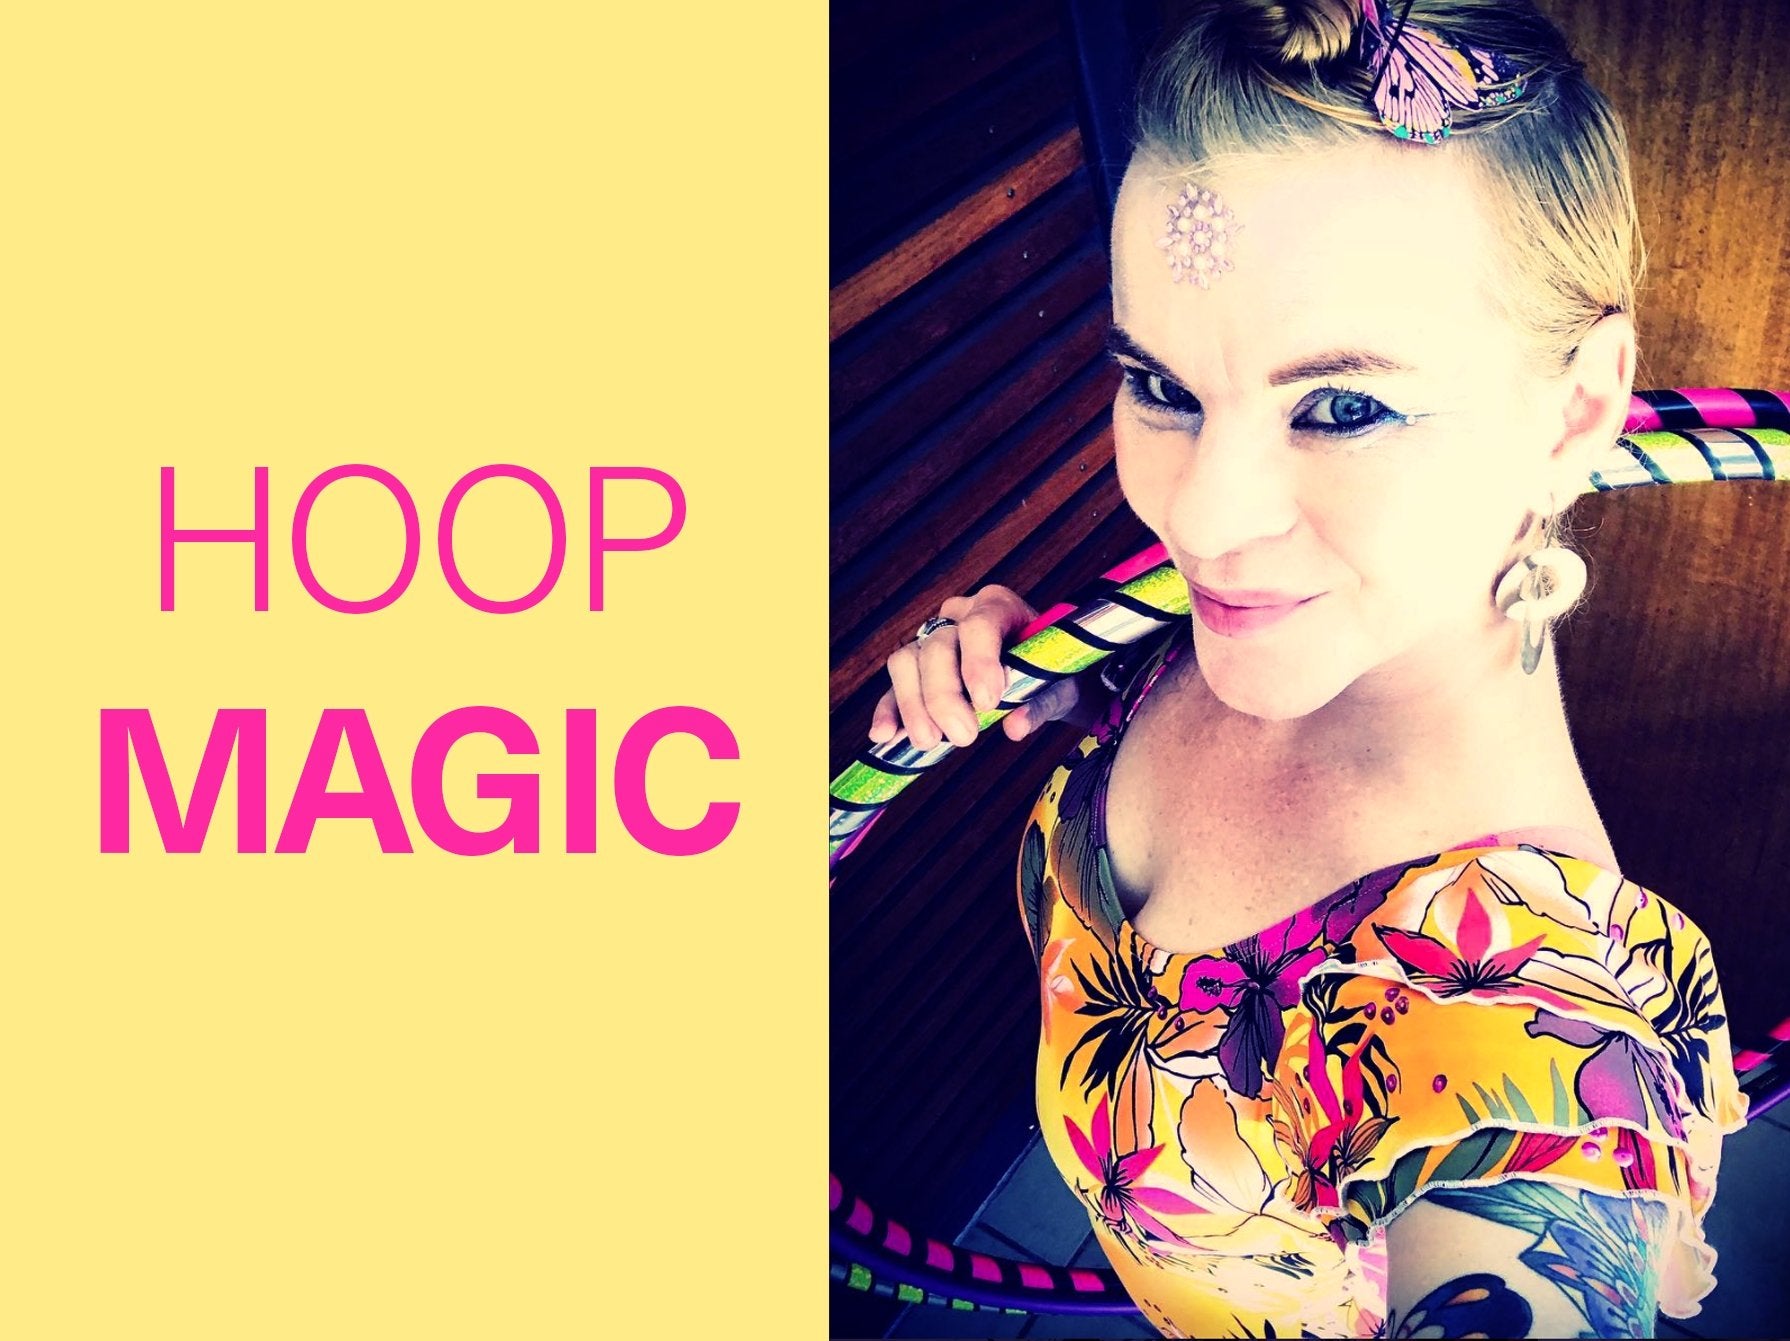 HOOP MAGIC STARTS 2.2.22 - JOIN ME! - Hoop Empire